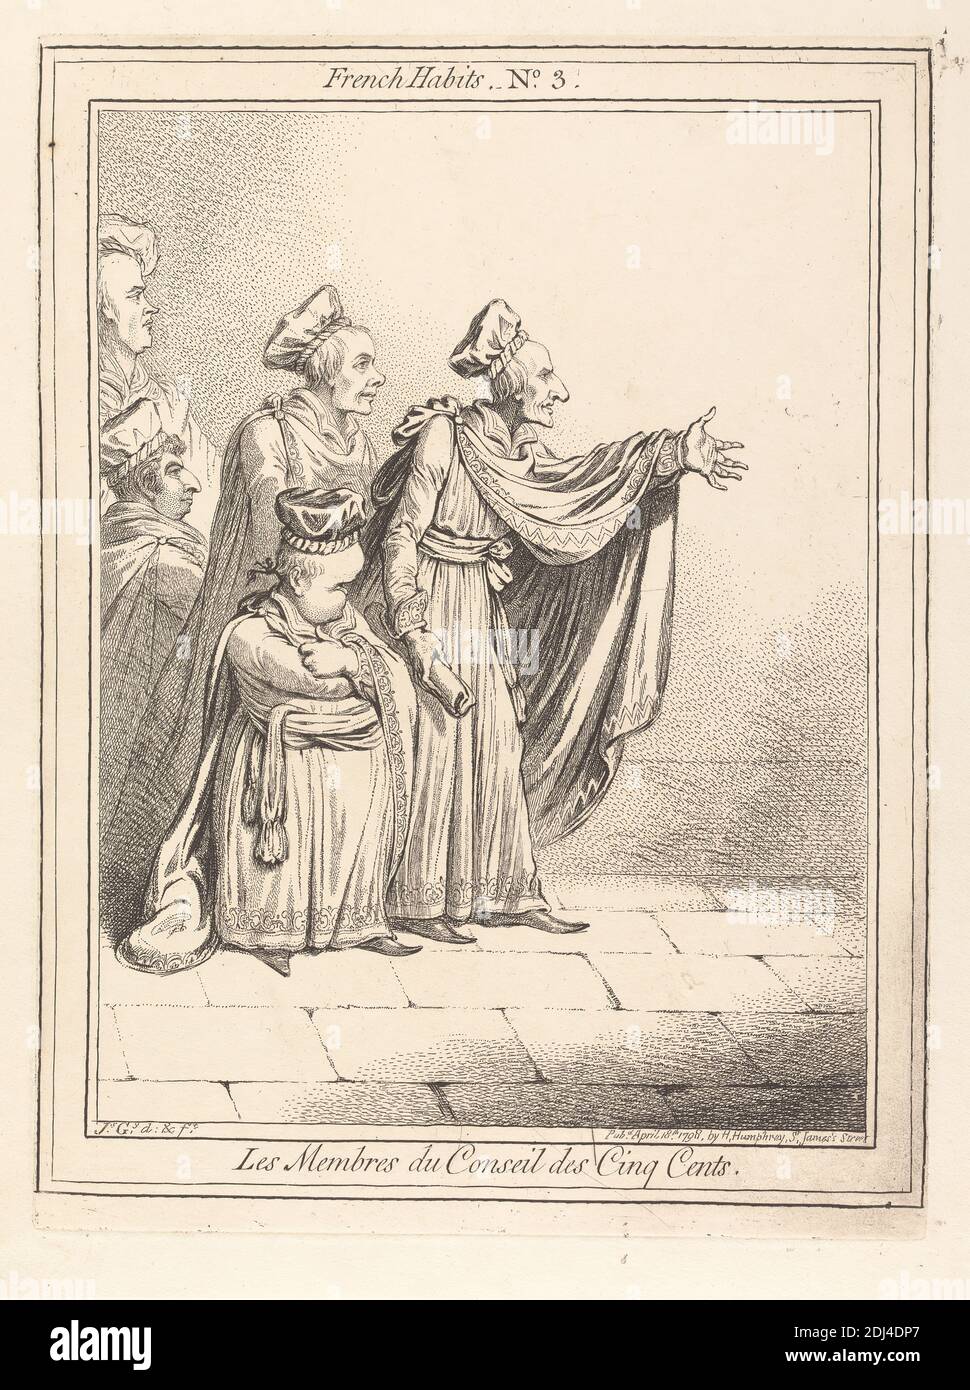 Les Membres du Conseil des Cinq Cents. French Habits No. 3, James Gillray, 1757–1815, British, 1798, Etching Stock Photo